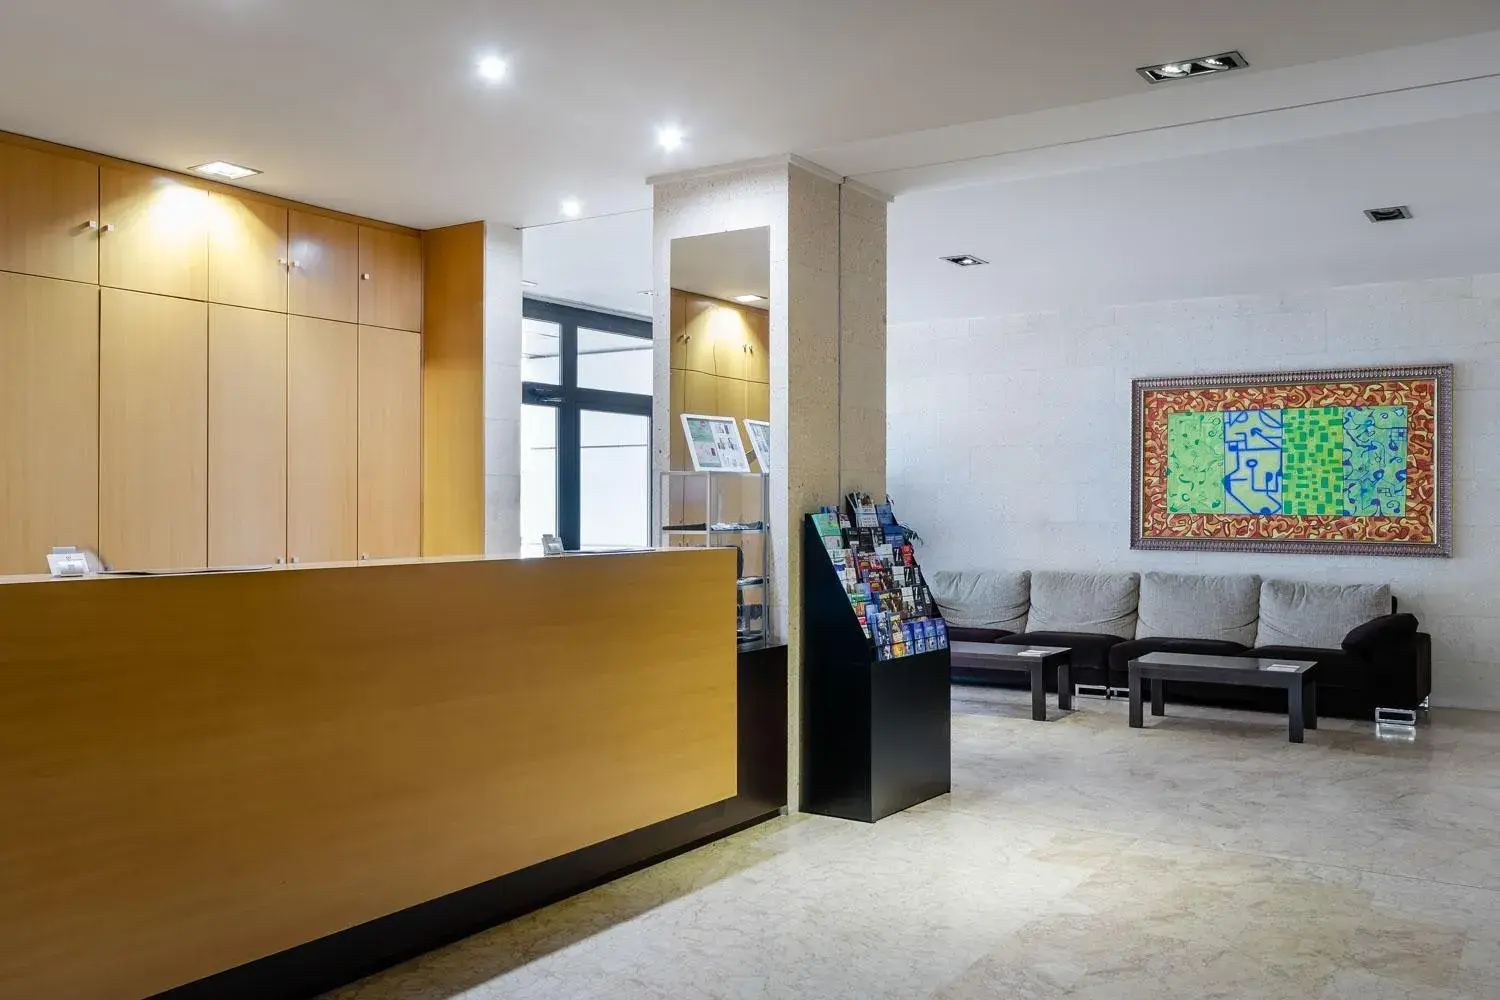 Lobby or reception, Lobby/Reception in Aparthotel Wellness